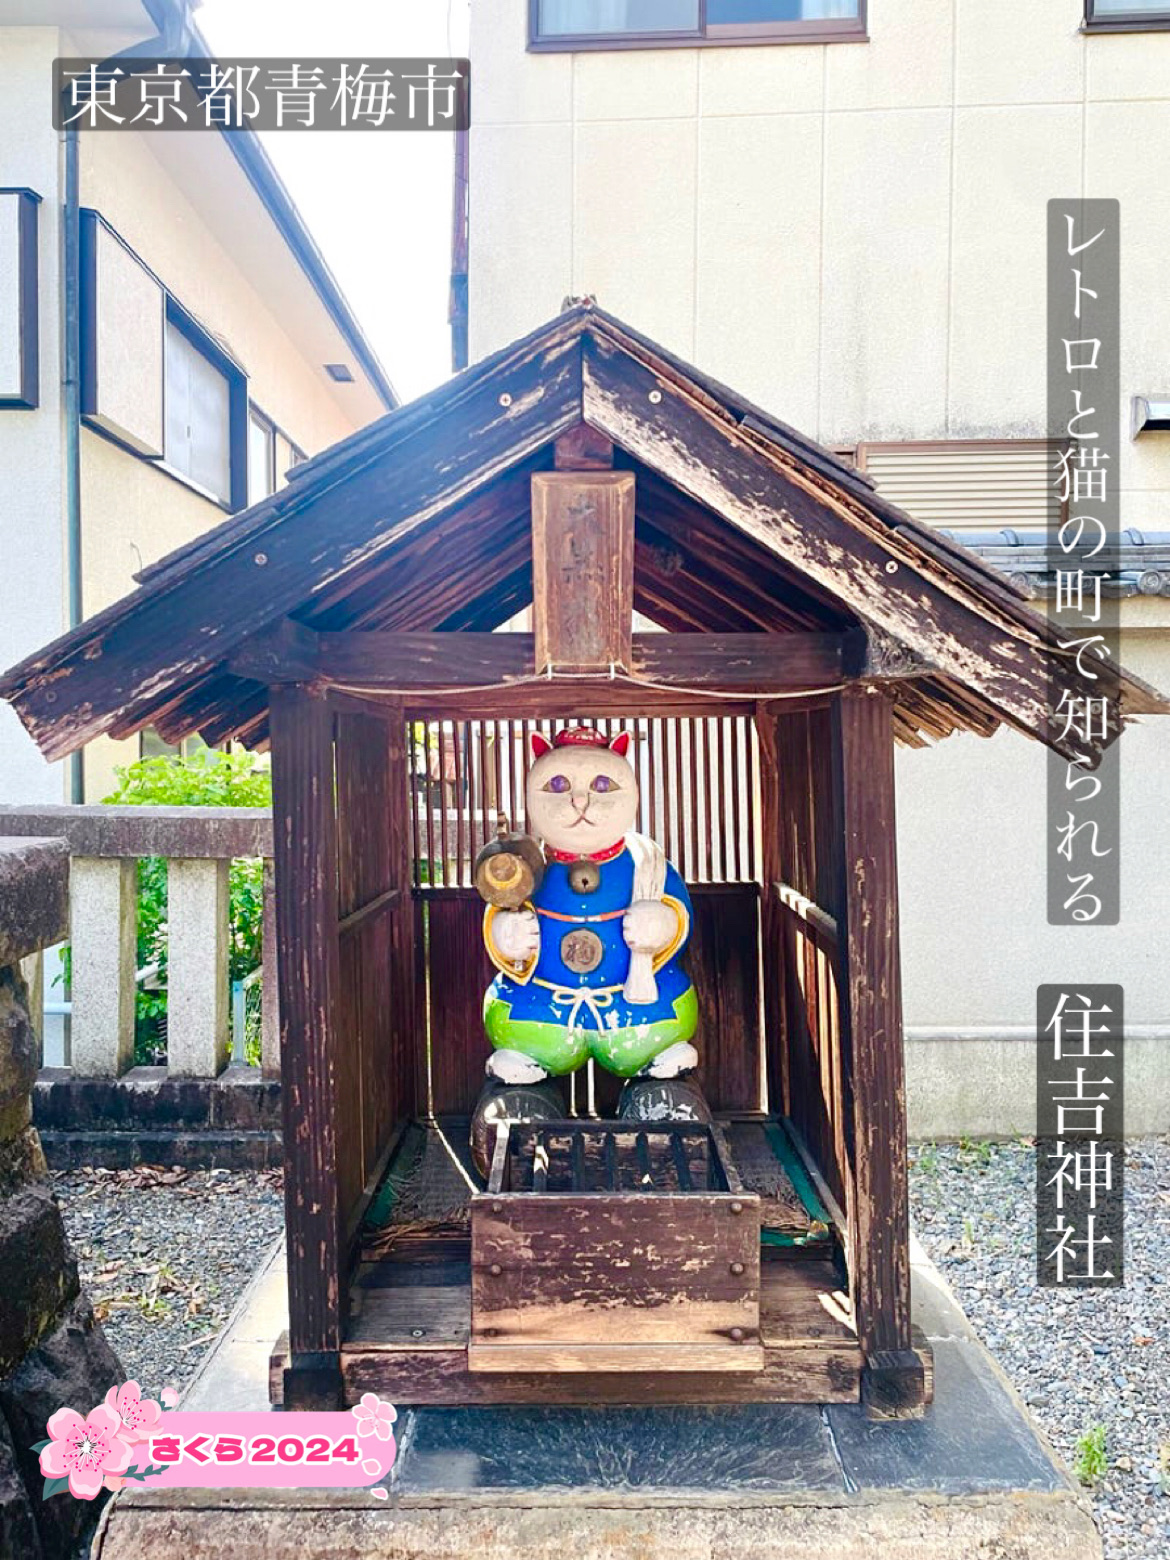 【住吉神社/东京都】以复古与猫之町而闻名的神社